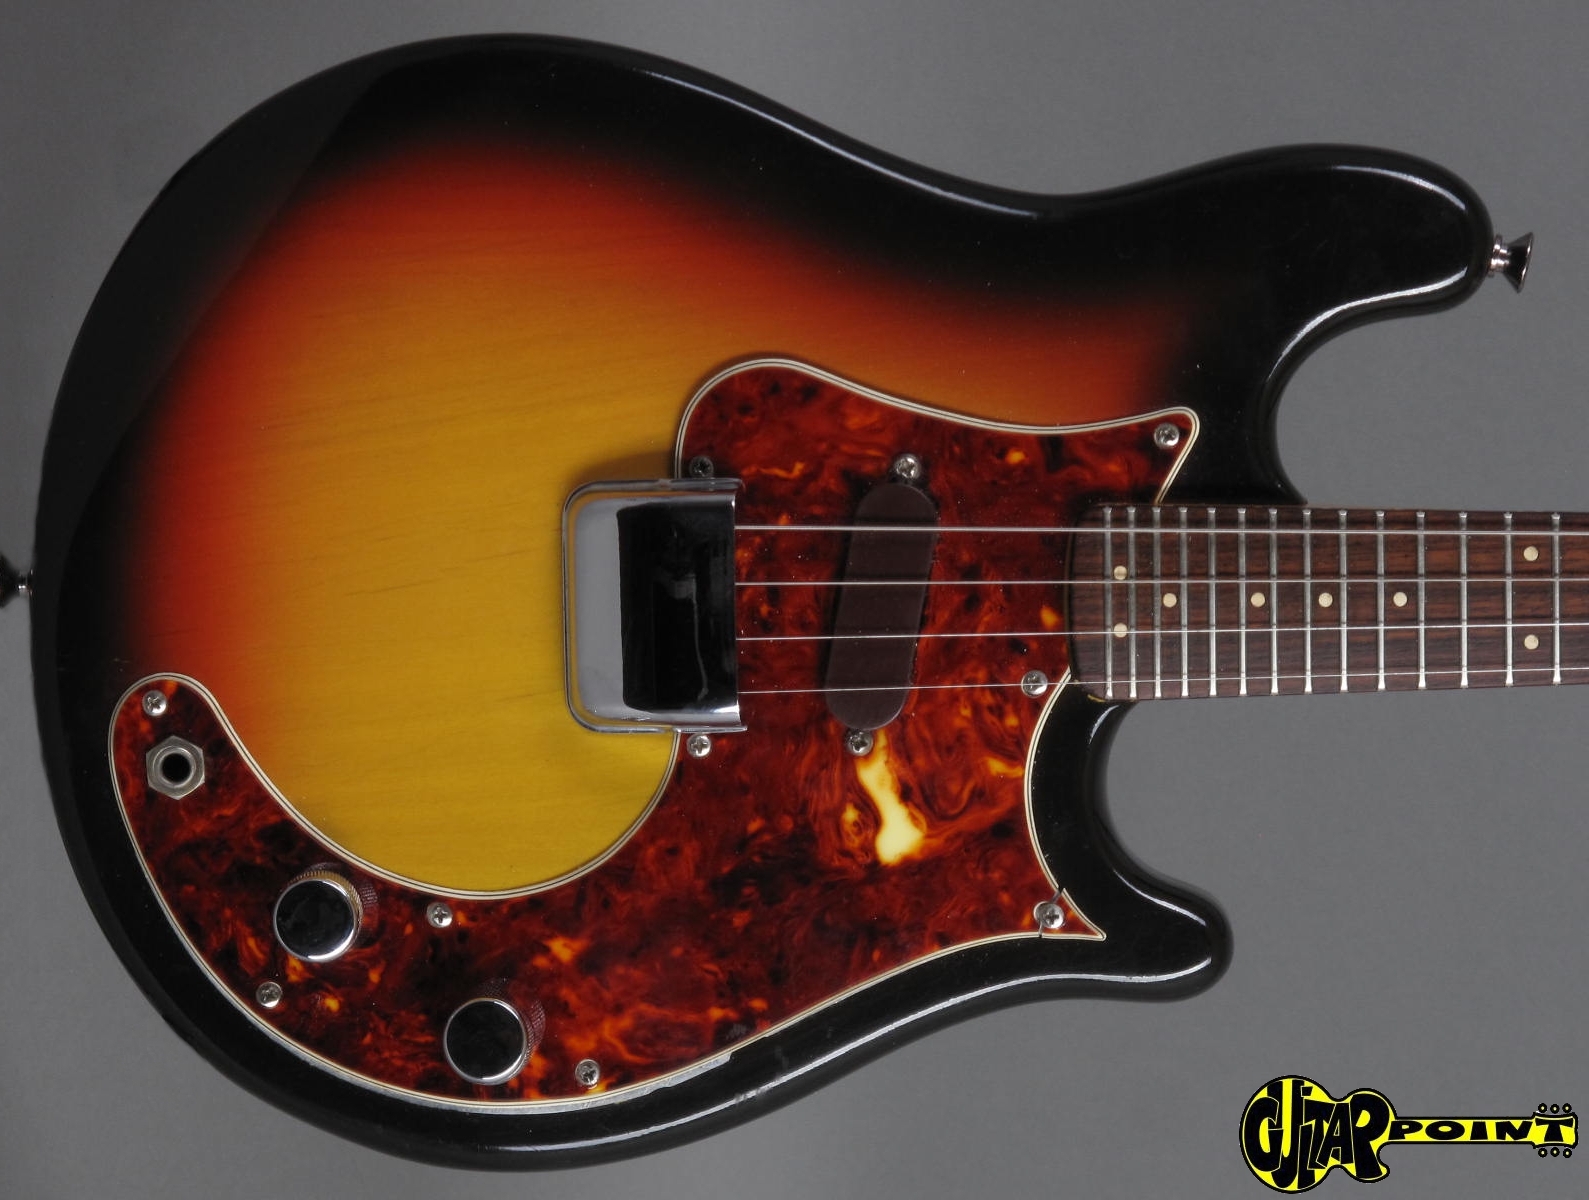 Fender Mando-Strat 8 3-Color Sunburst mandoline électrique